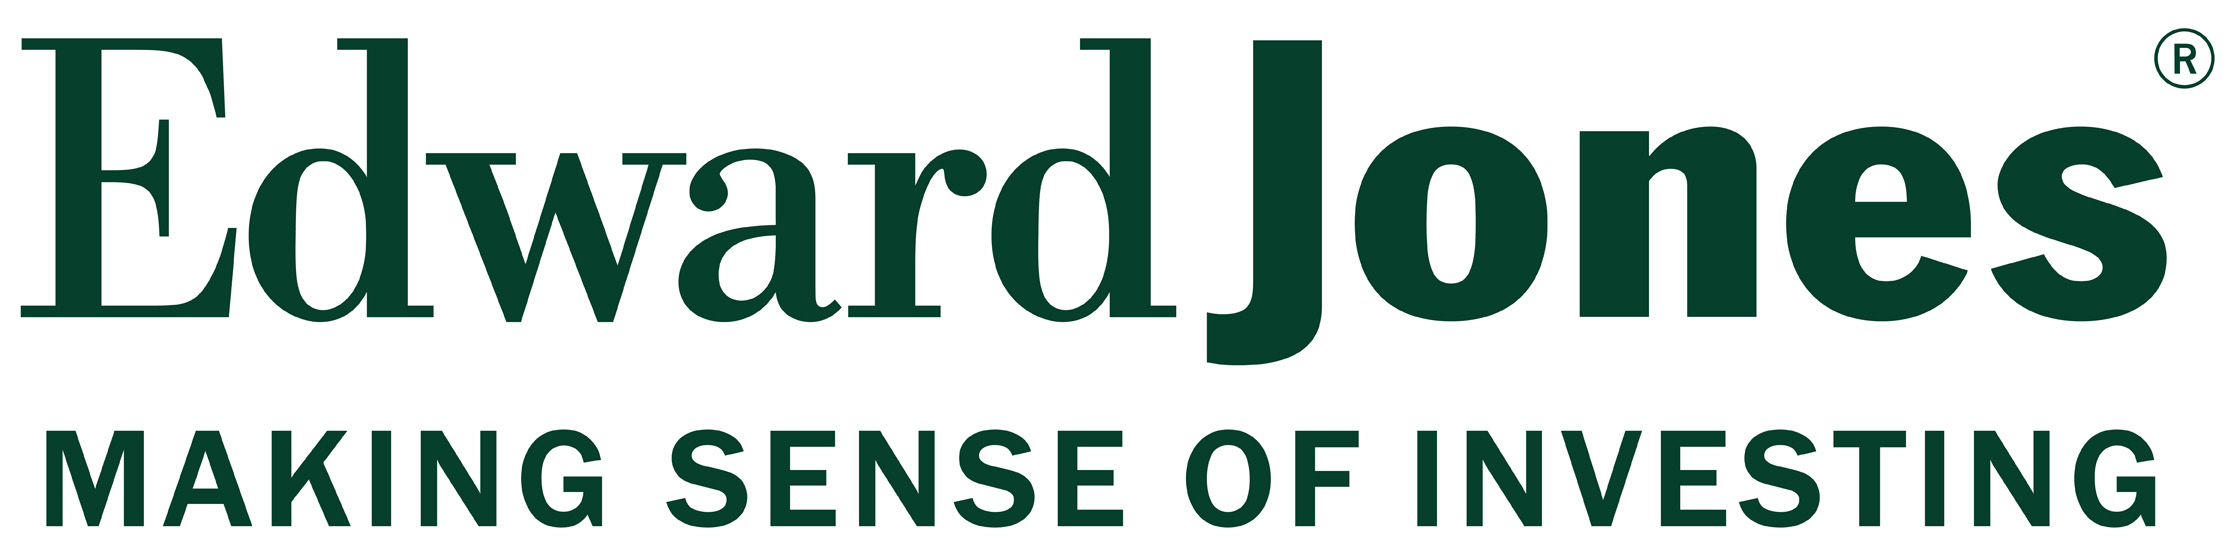 edward-jones-logo.jpg